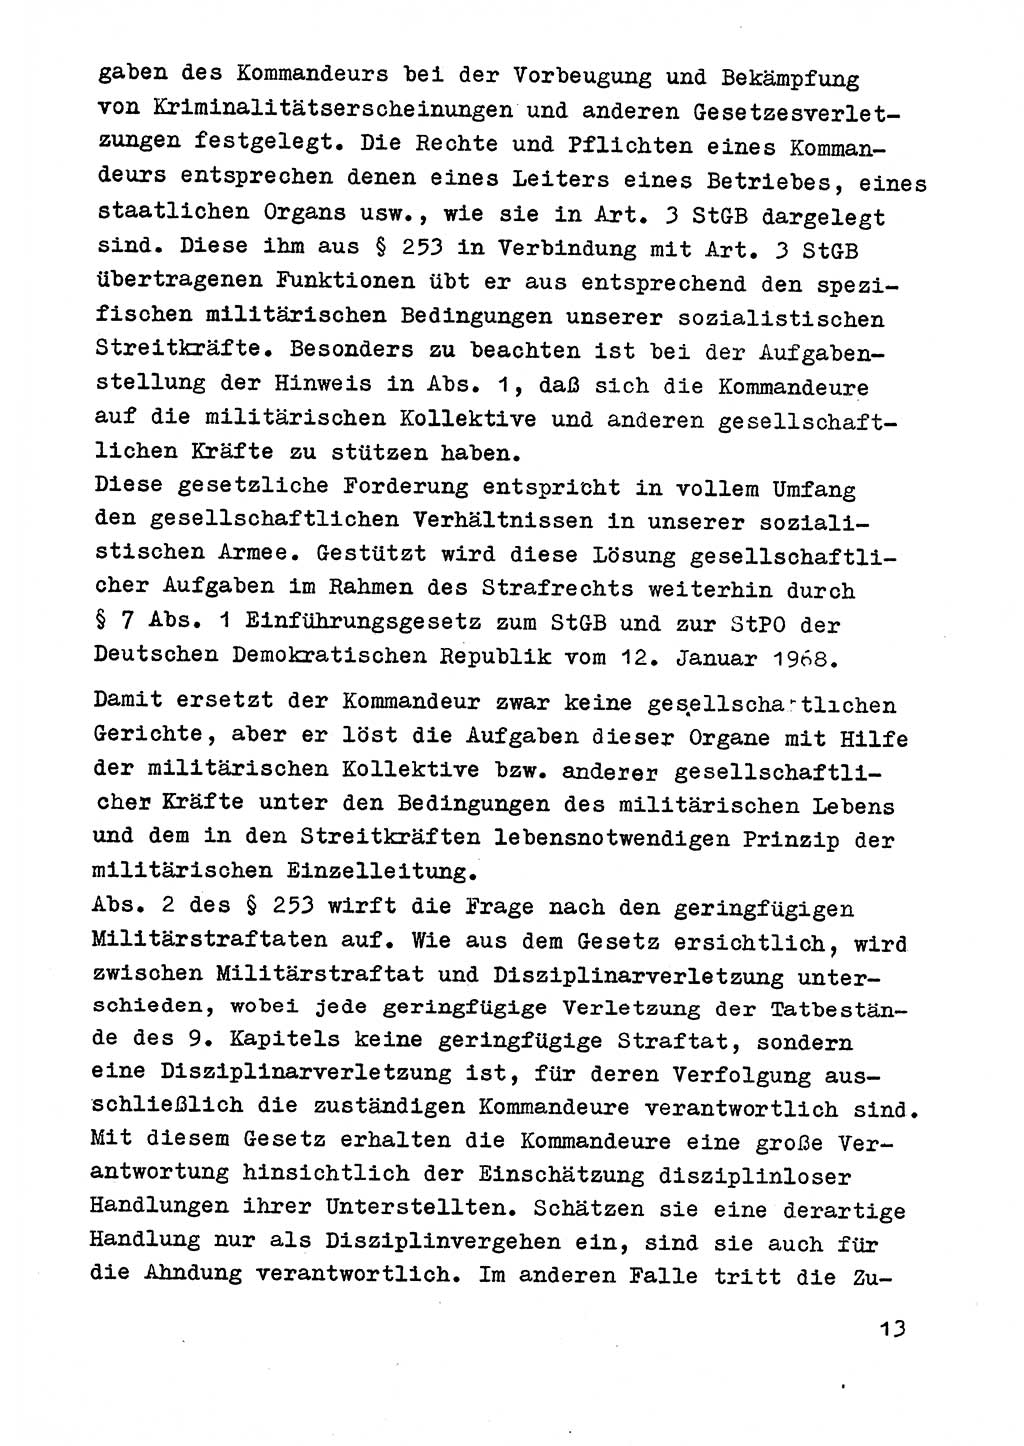 Strafrecht der DDR (Deutsche Demokratische Republik), Besonderer Teil, Lehrmaterial, Heft 9 1969, Seite 13 (Strafr. DDR BT Lehrmat. H. 9 1969, S. 13)